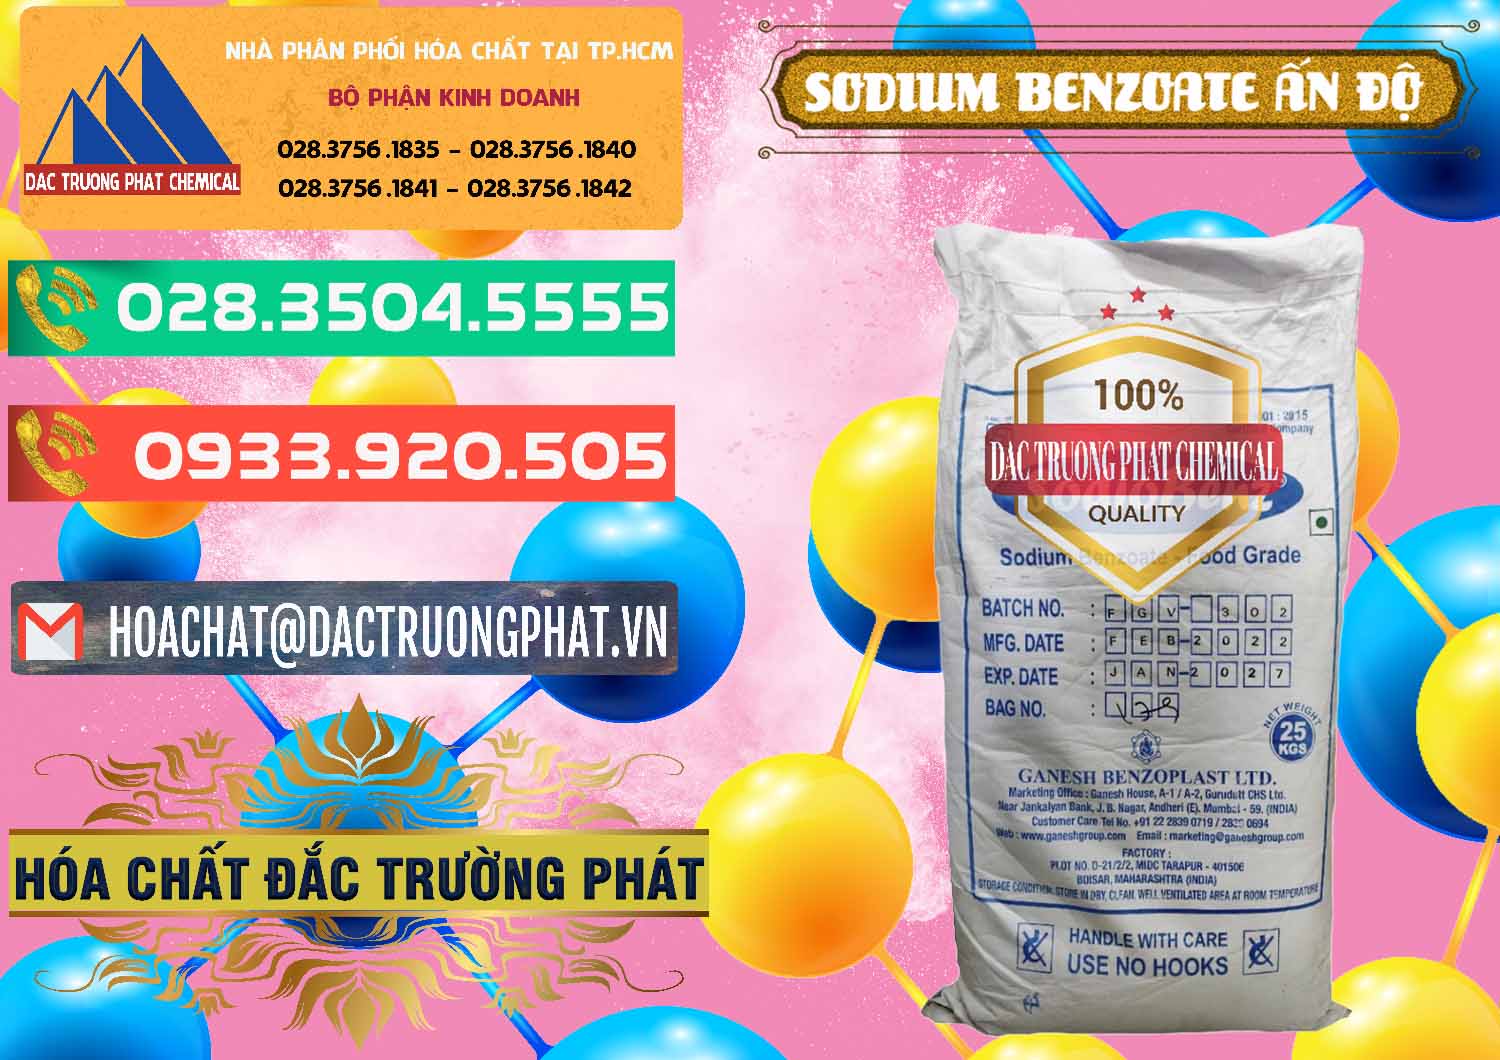 Nhà cung ứng & bán Sodium Benzoate - Mốc Bột Ấn Độ India - 0361 - Cty chuyên phân phối ( kinh doanh ) hóa chất tại TP.HCM - congtyhoachat.com.vn